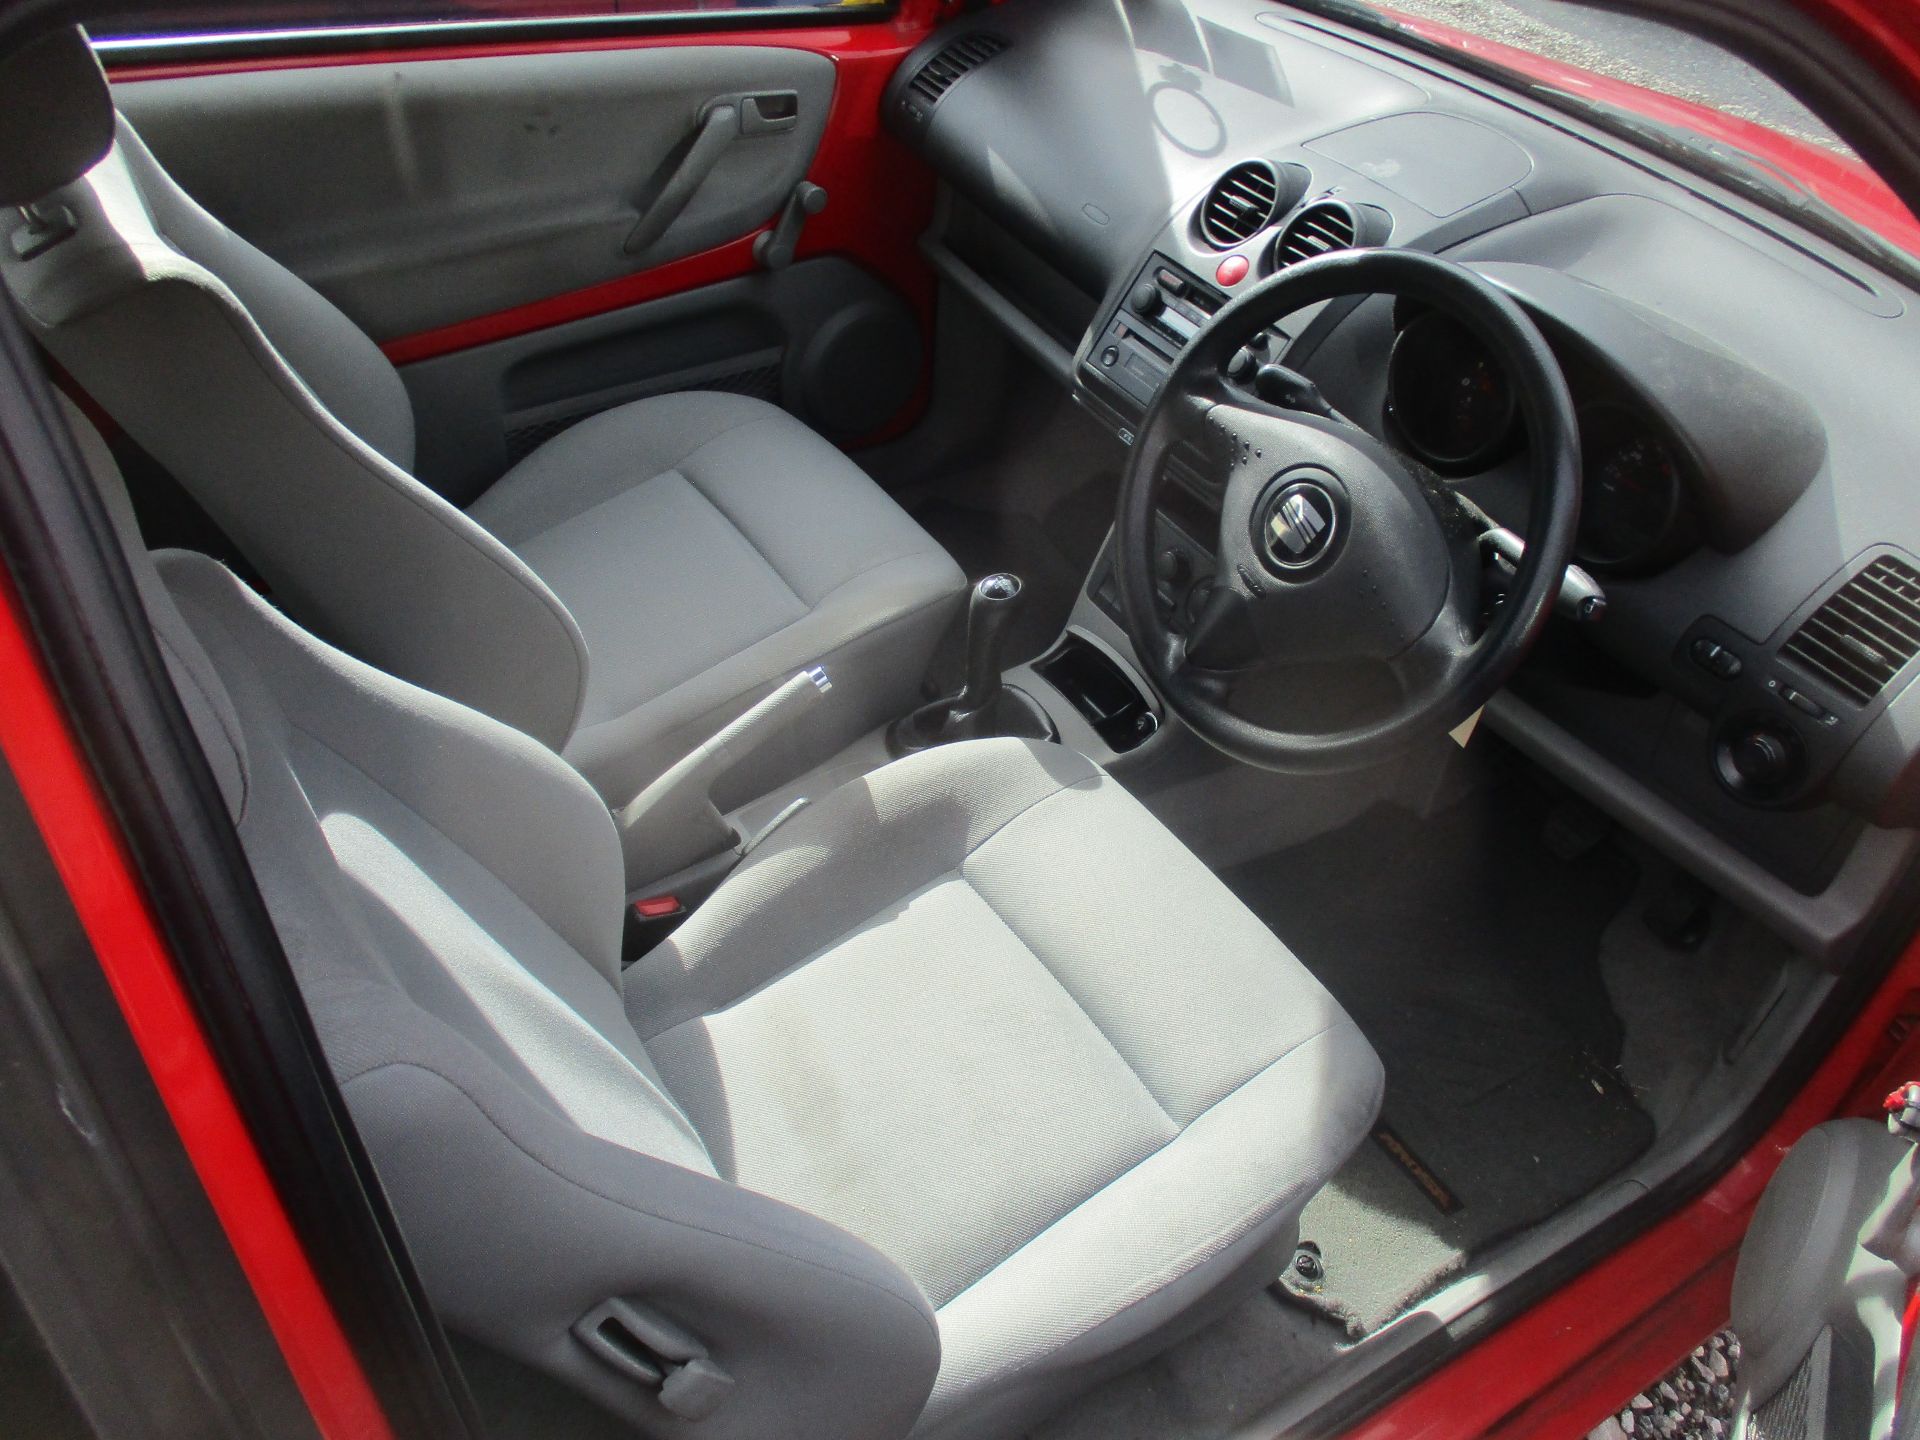 02/02 SEAT AROSA - 998cc 3dr Hatchback (Red, 48k) - Image 13 of 14